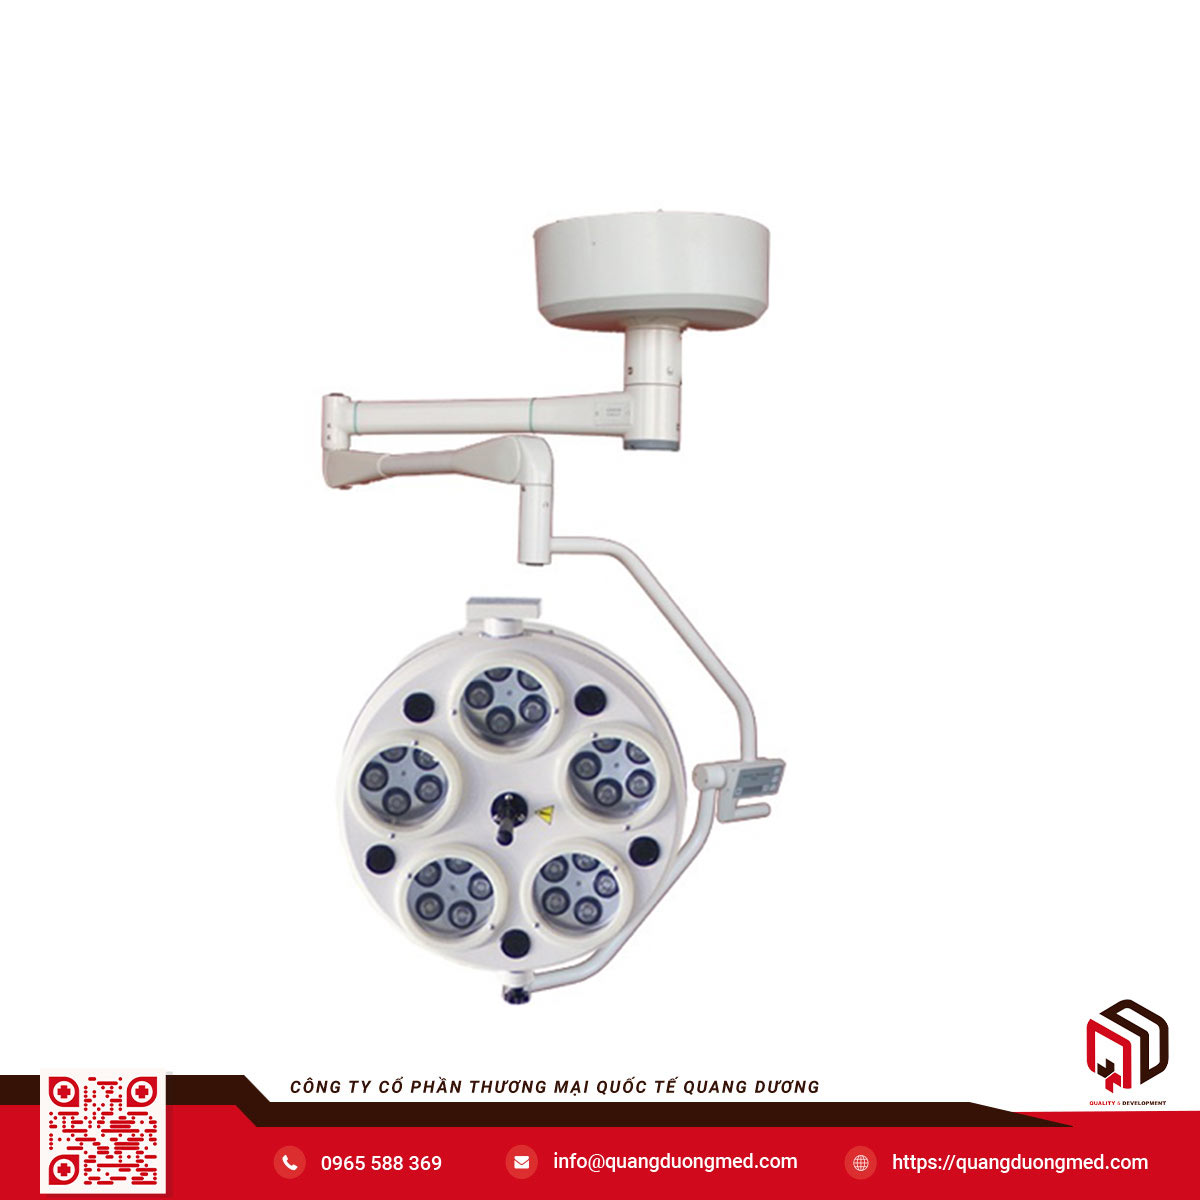 Đèn mổ treo trần 5 cụm bóng LED (25 bóng) - Model: WYLEDK5 - Hãng: Weyuan Medical